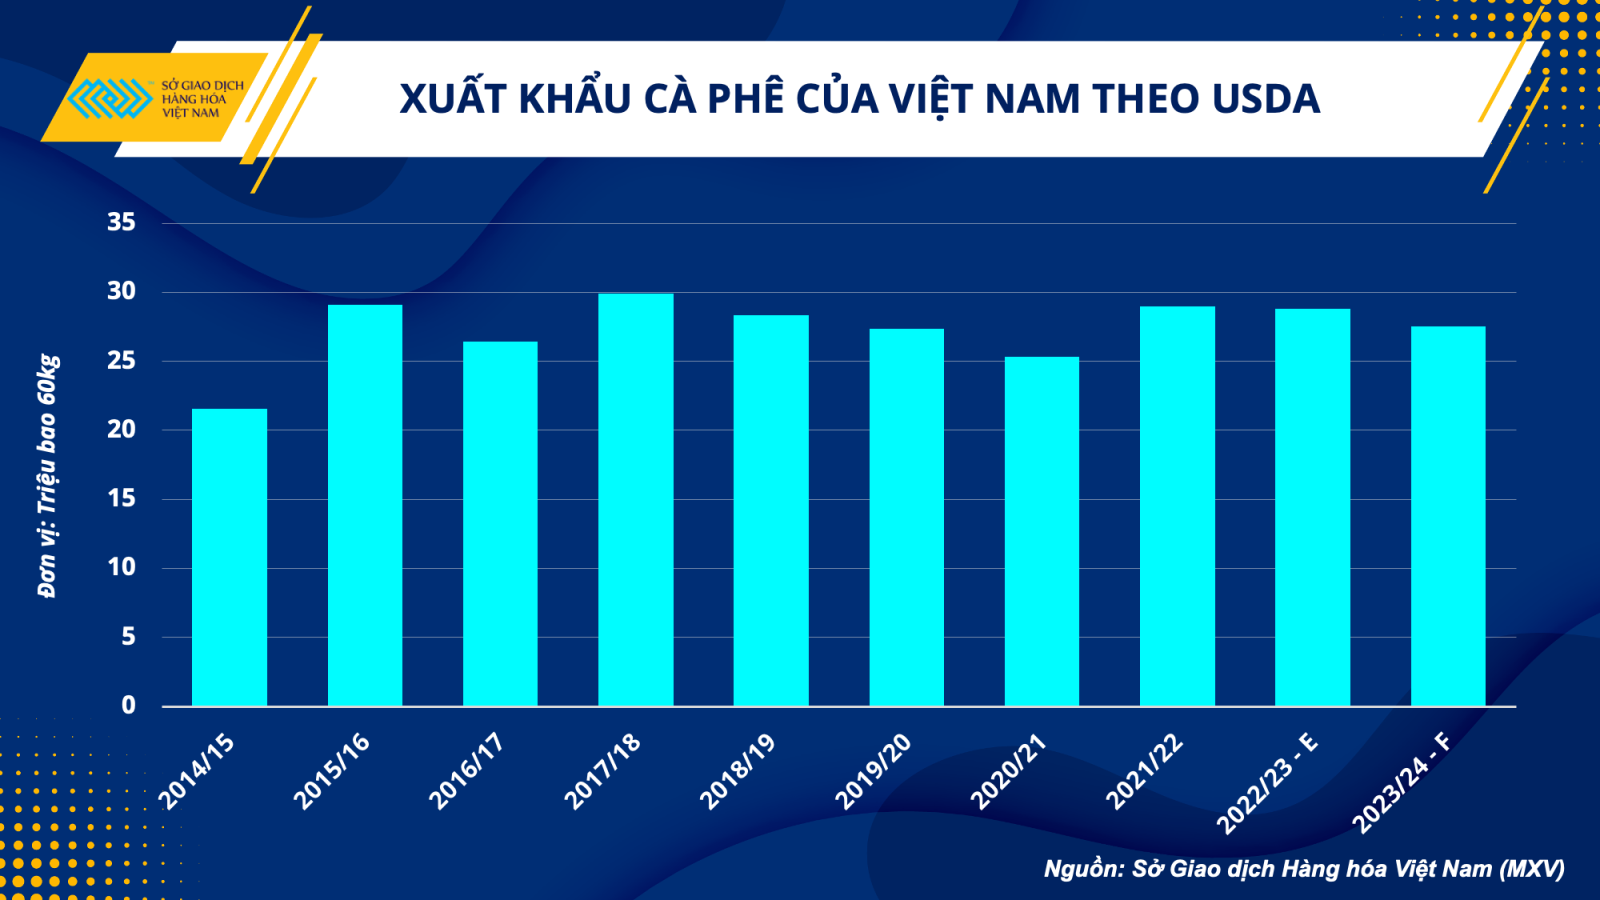 xuất khẩu cà phê của Việt Nam